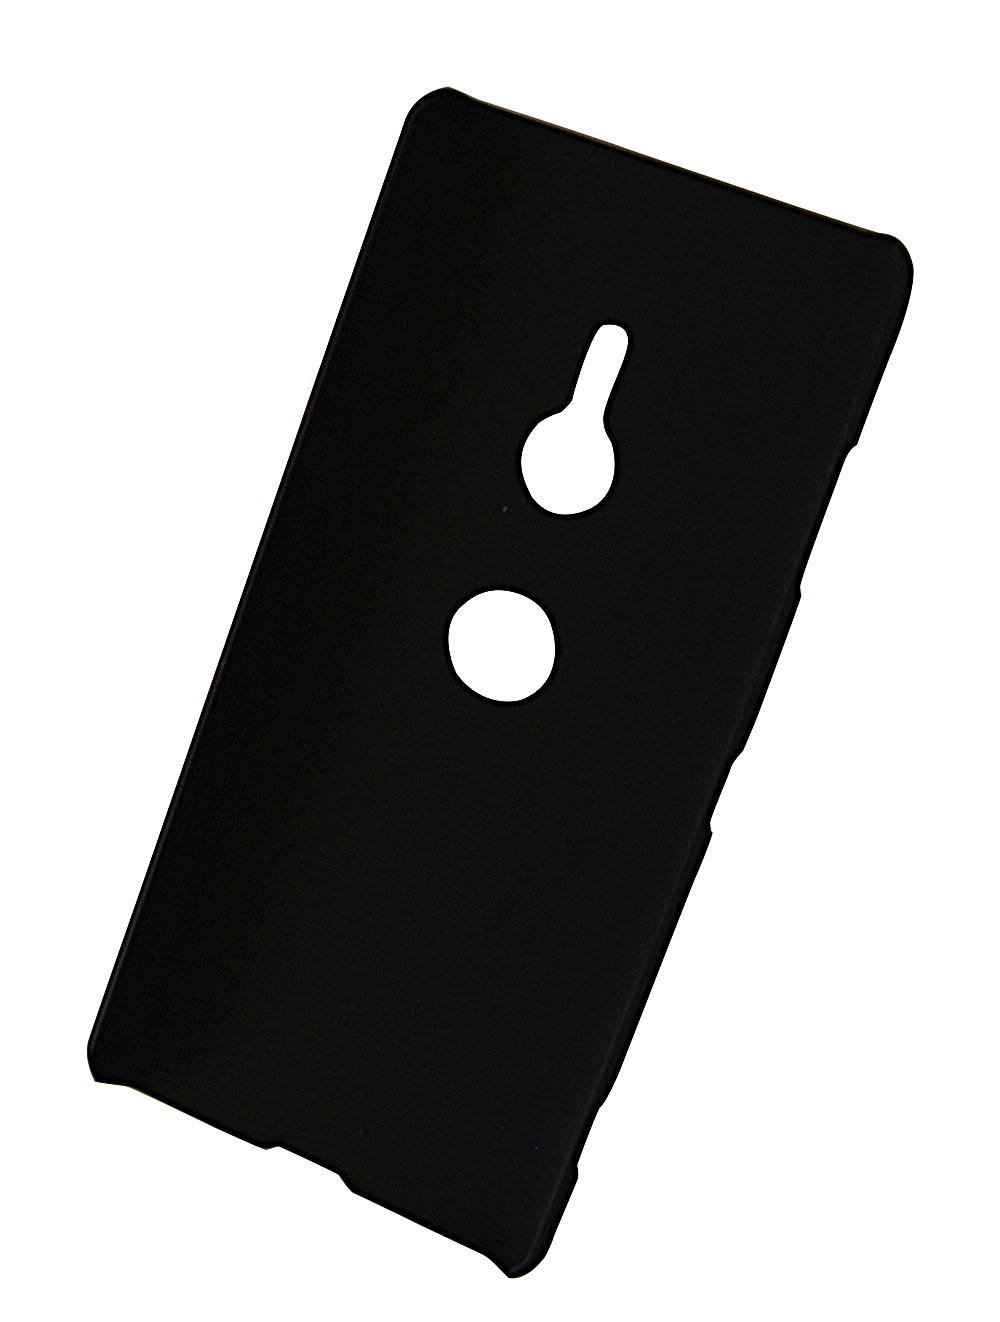 Skimblocker XL Magnet Wallet Sony Xperia XZ3